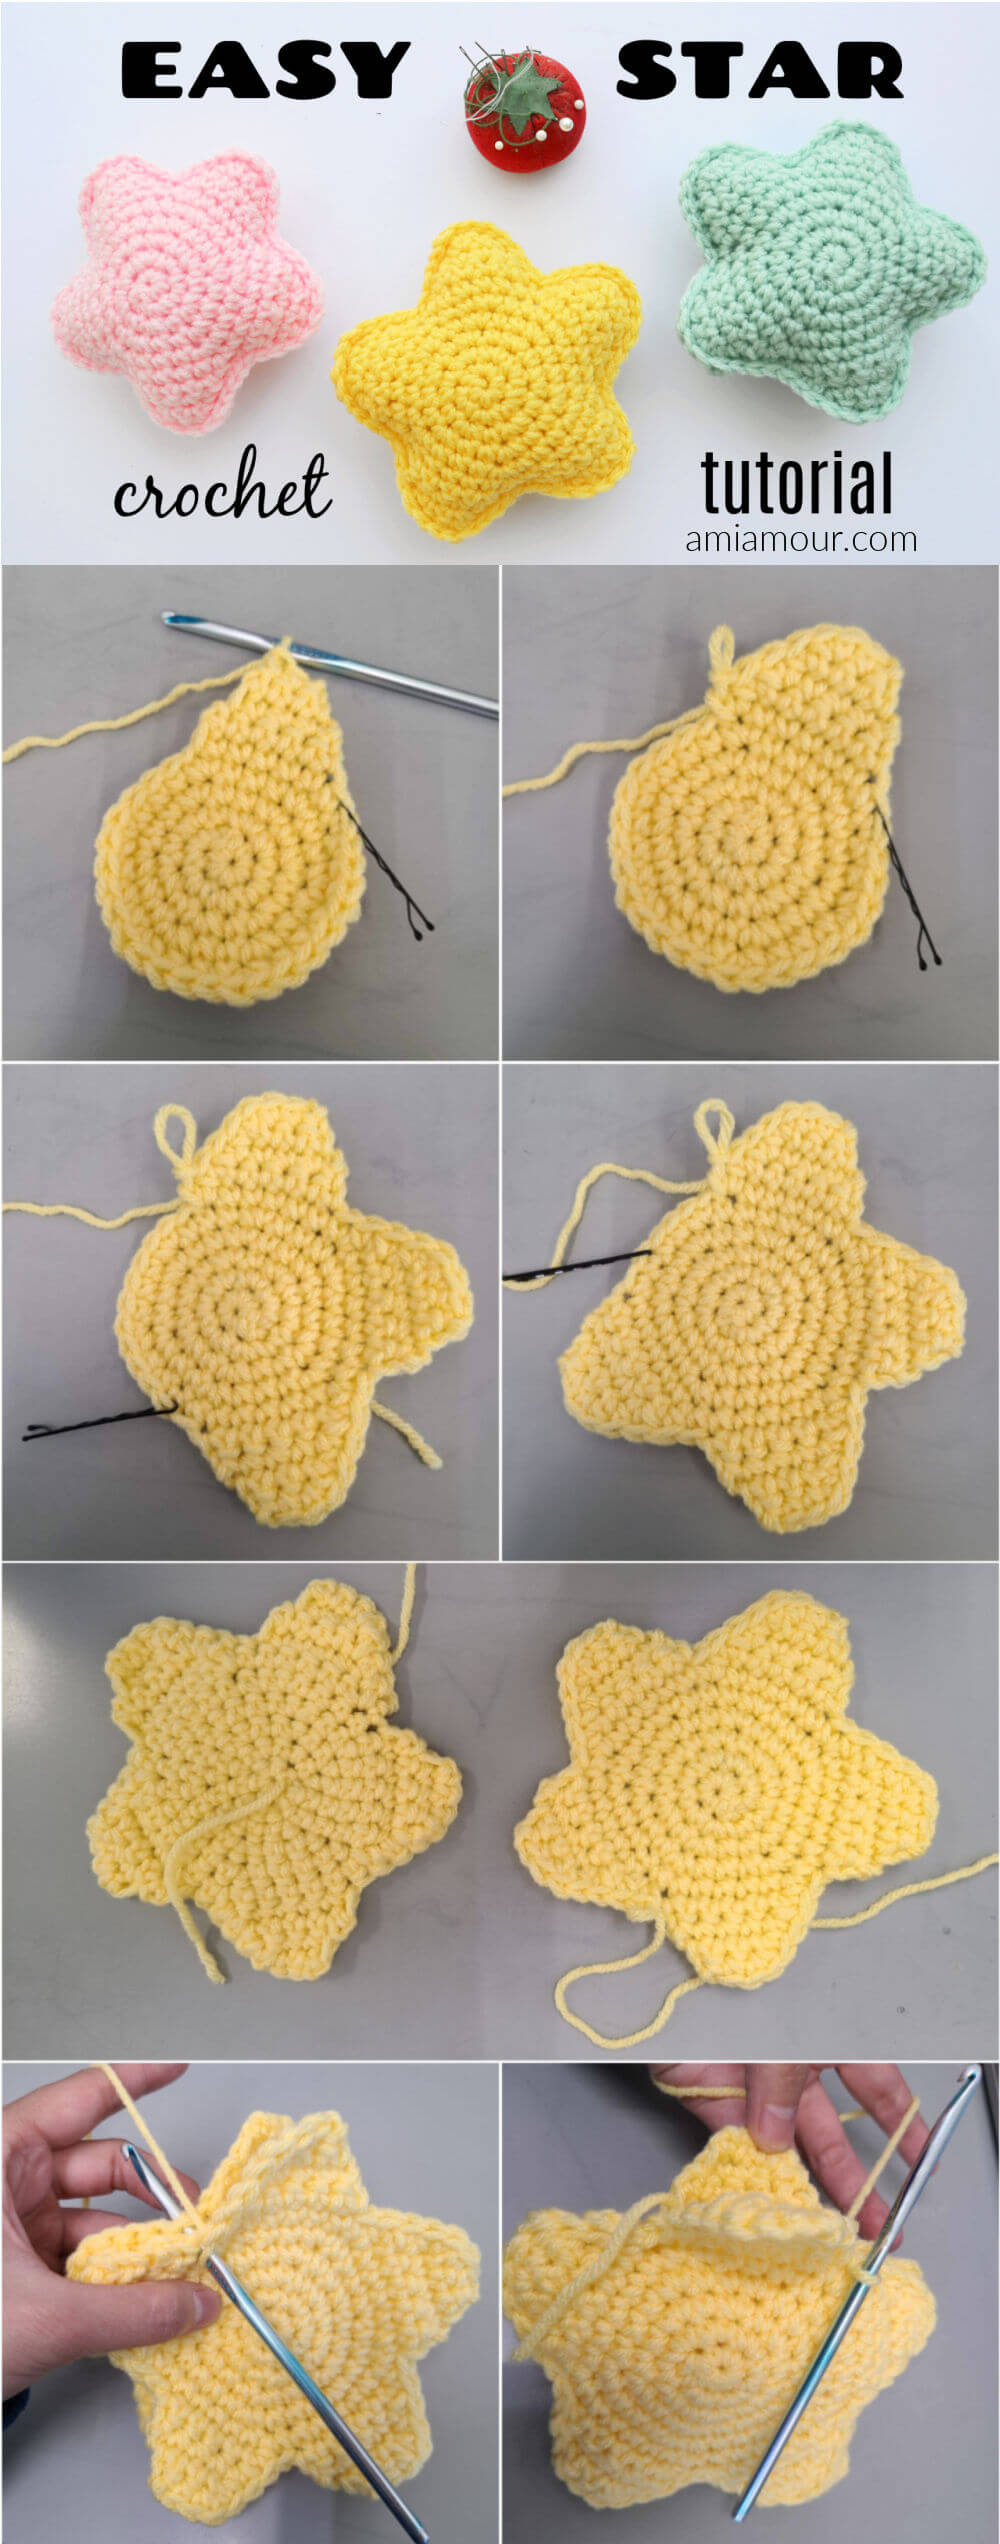 Assembling a 3D Crochet Star